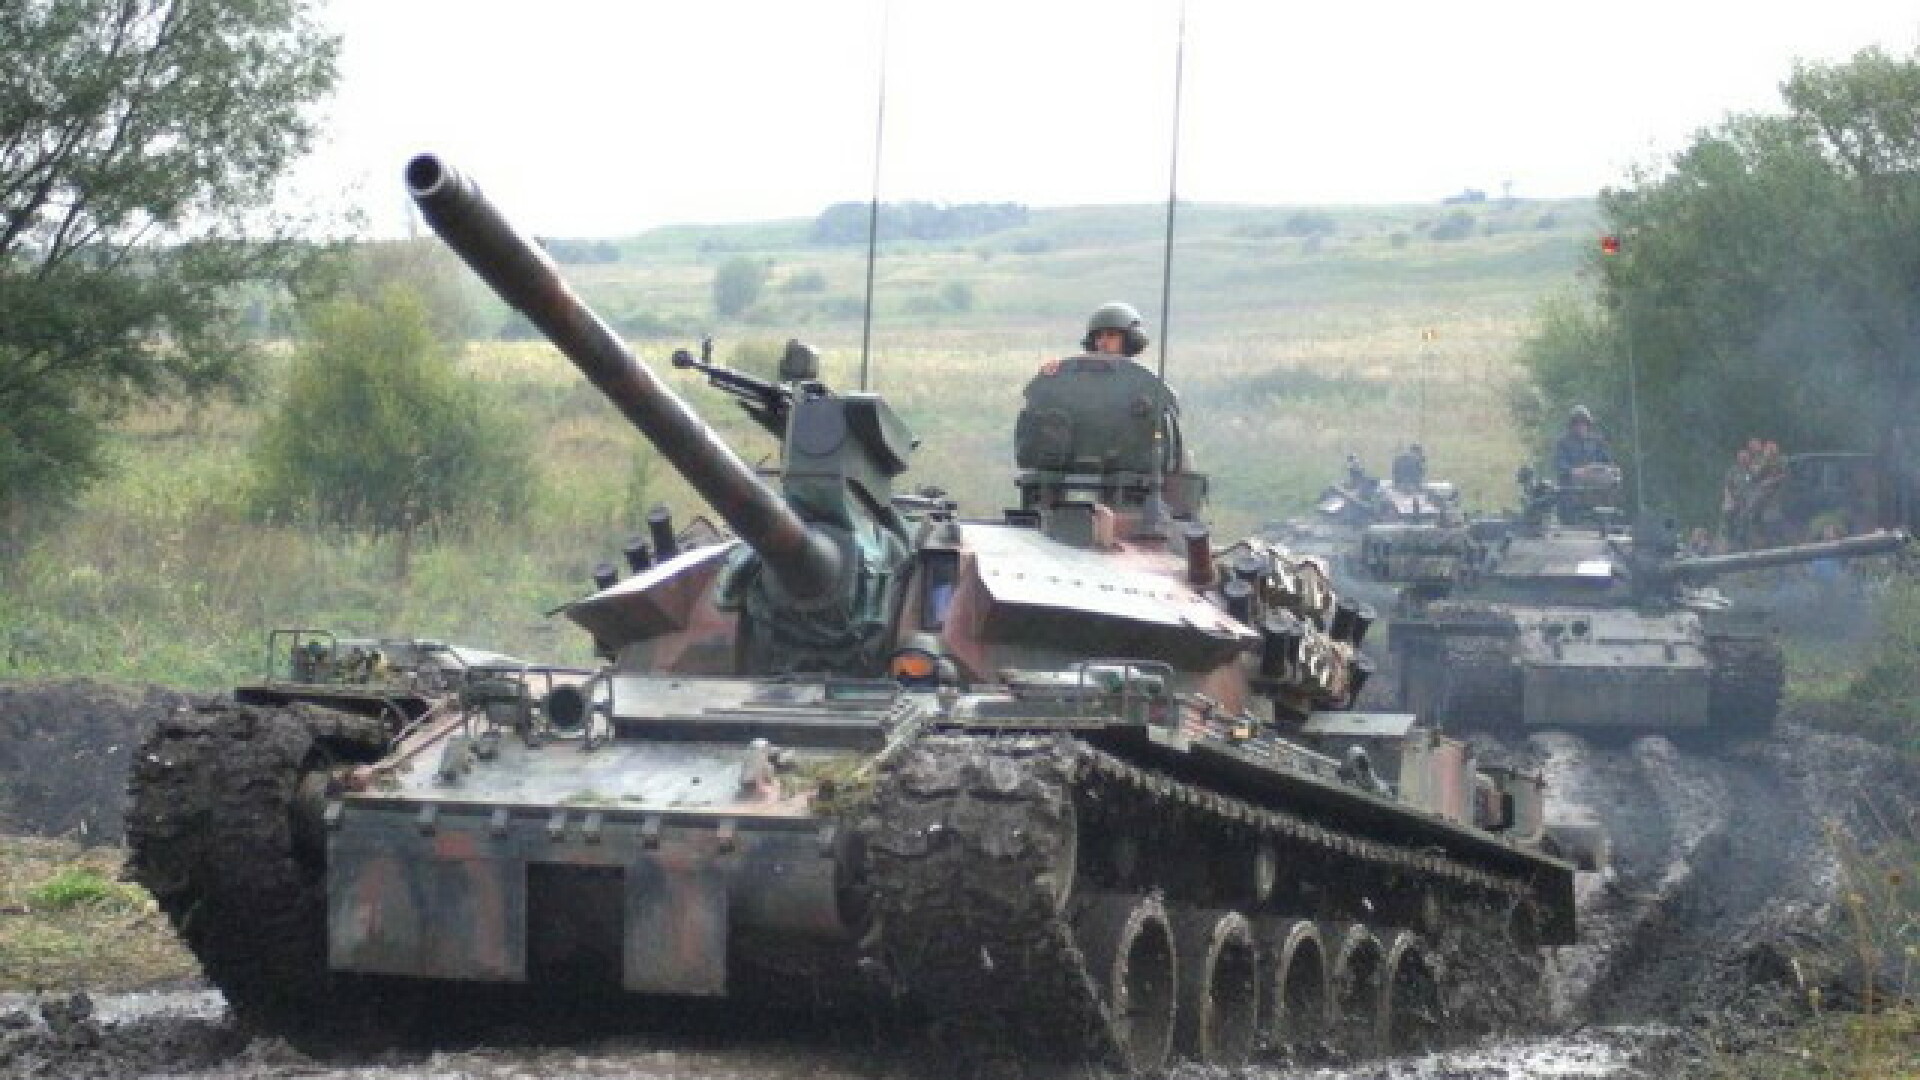 Uite pacea, nu e pacea! Tancurile ruseşti îşi continuă marşul prin Georgia!